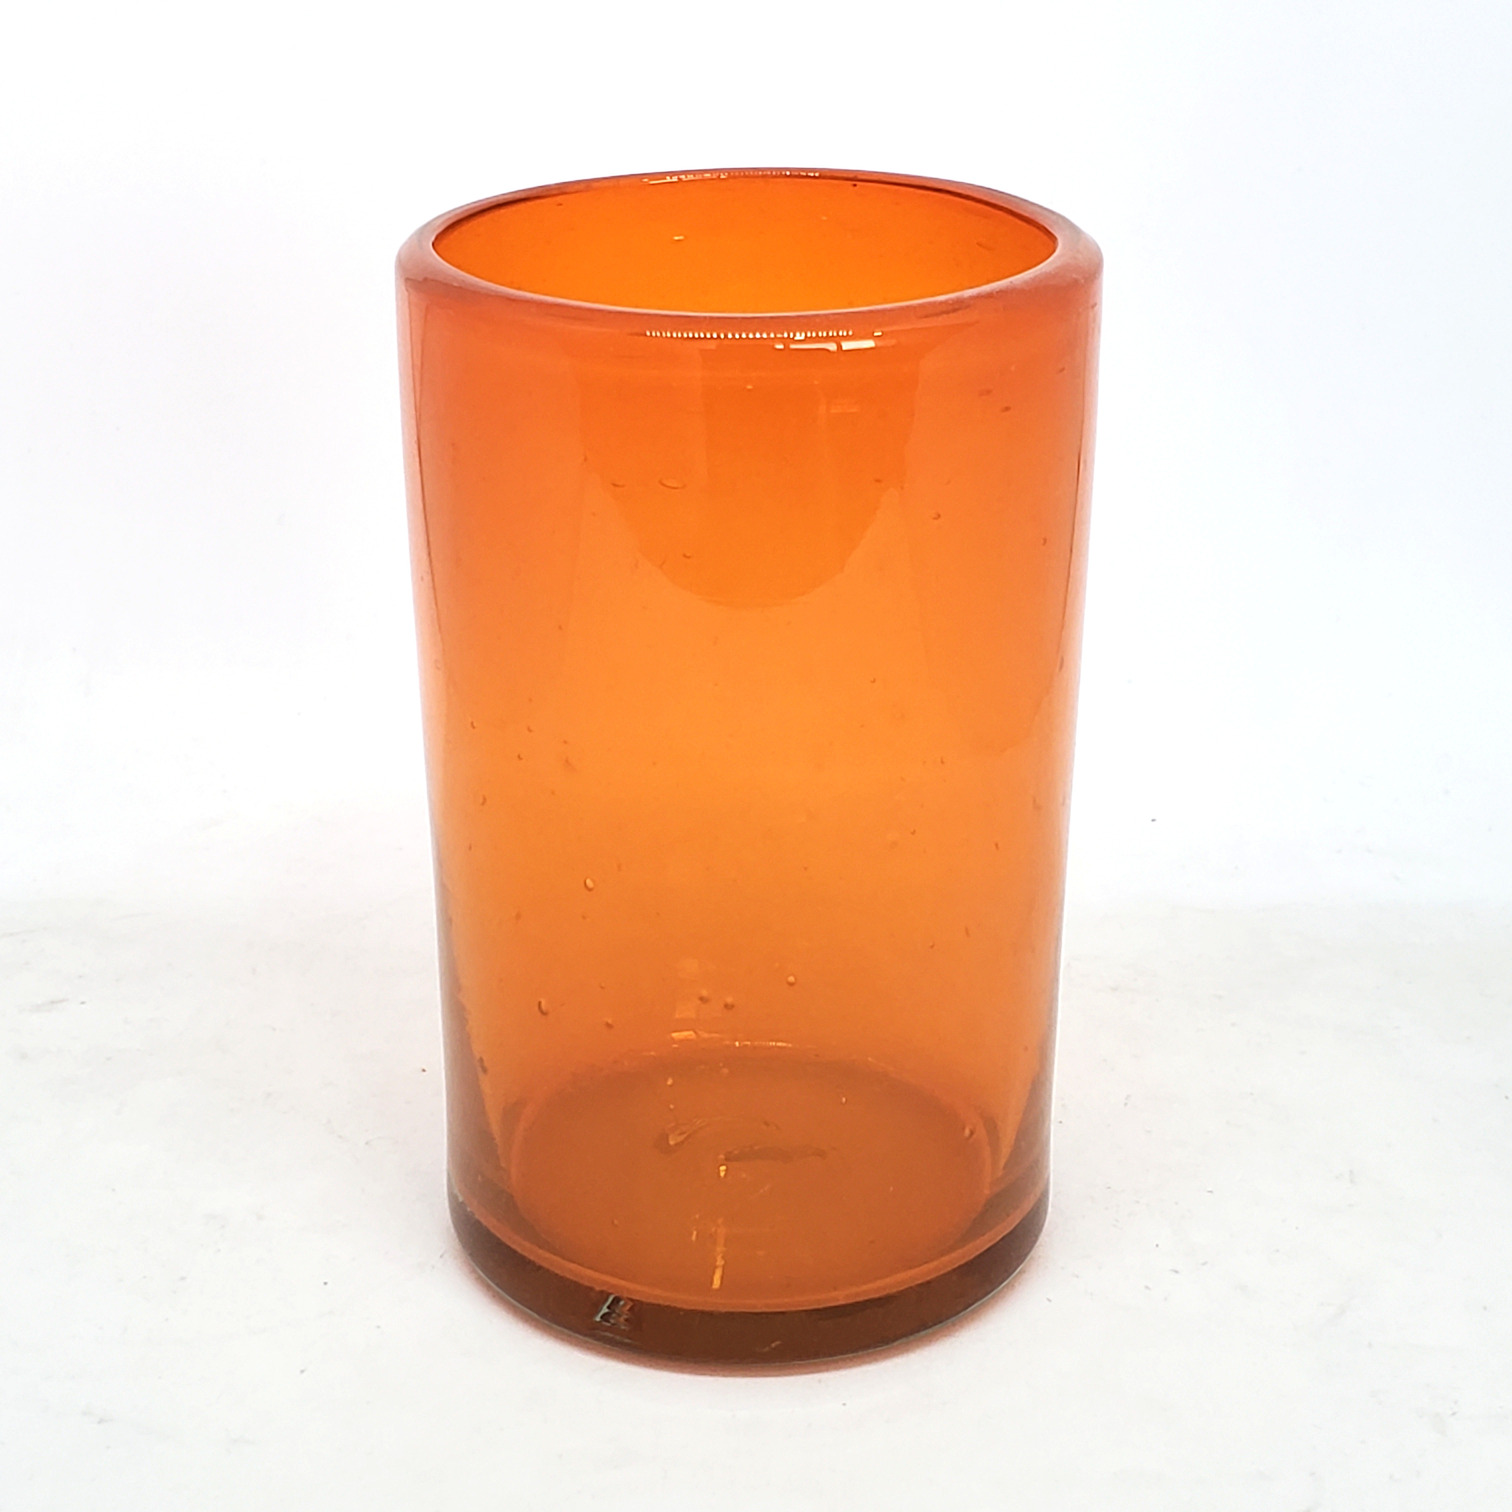 Vasos de Vidrio Soplado / Juego de 6 vasos grandes color naranja / Éstos artesanales vasos le darán un toque clásico a su bebida favorita.